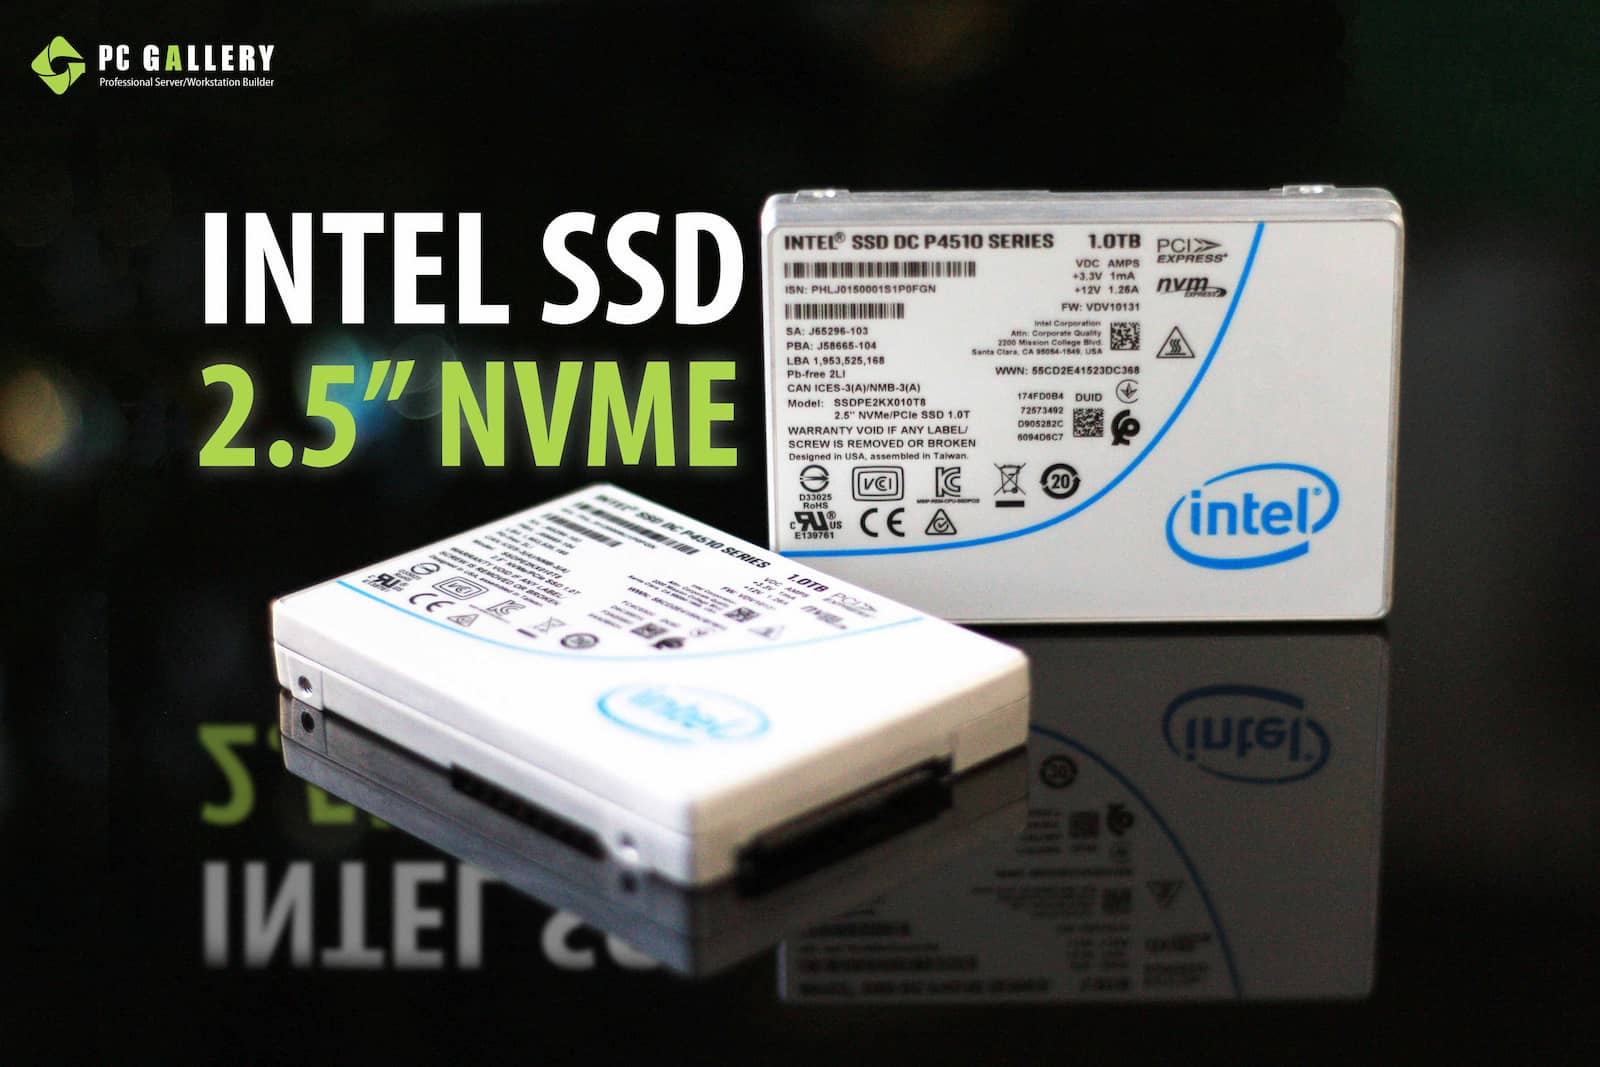 IntelSSD 2.5" NVMe DC P4510